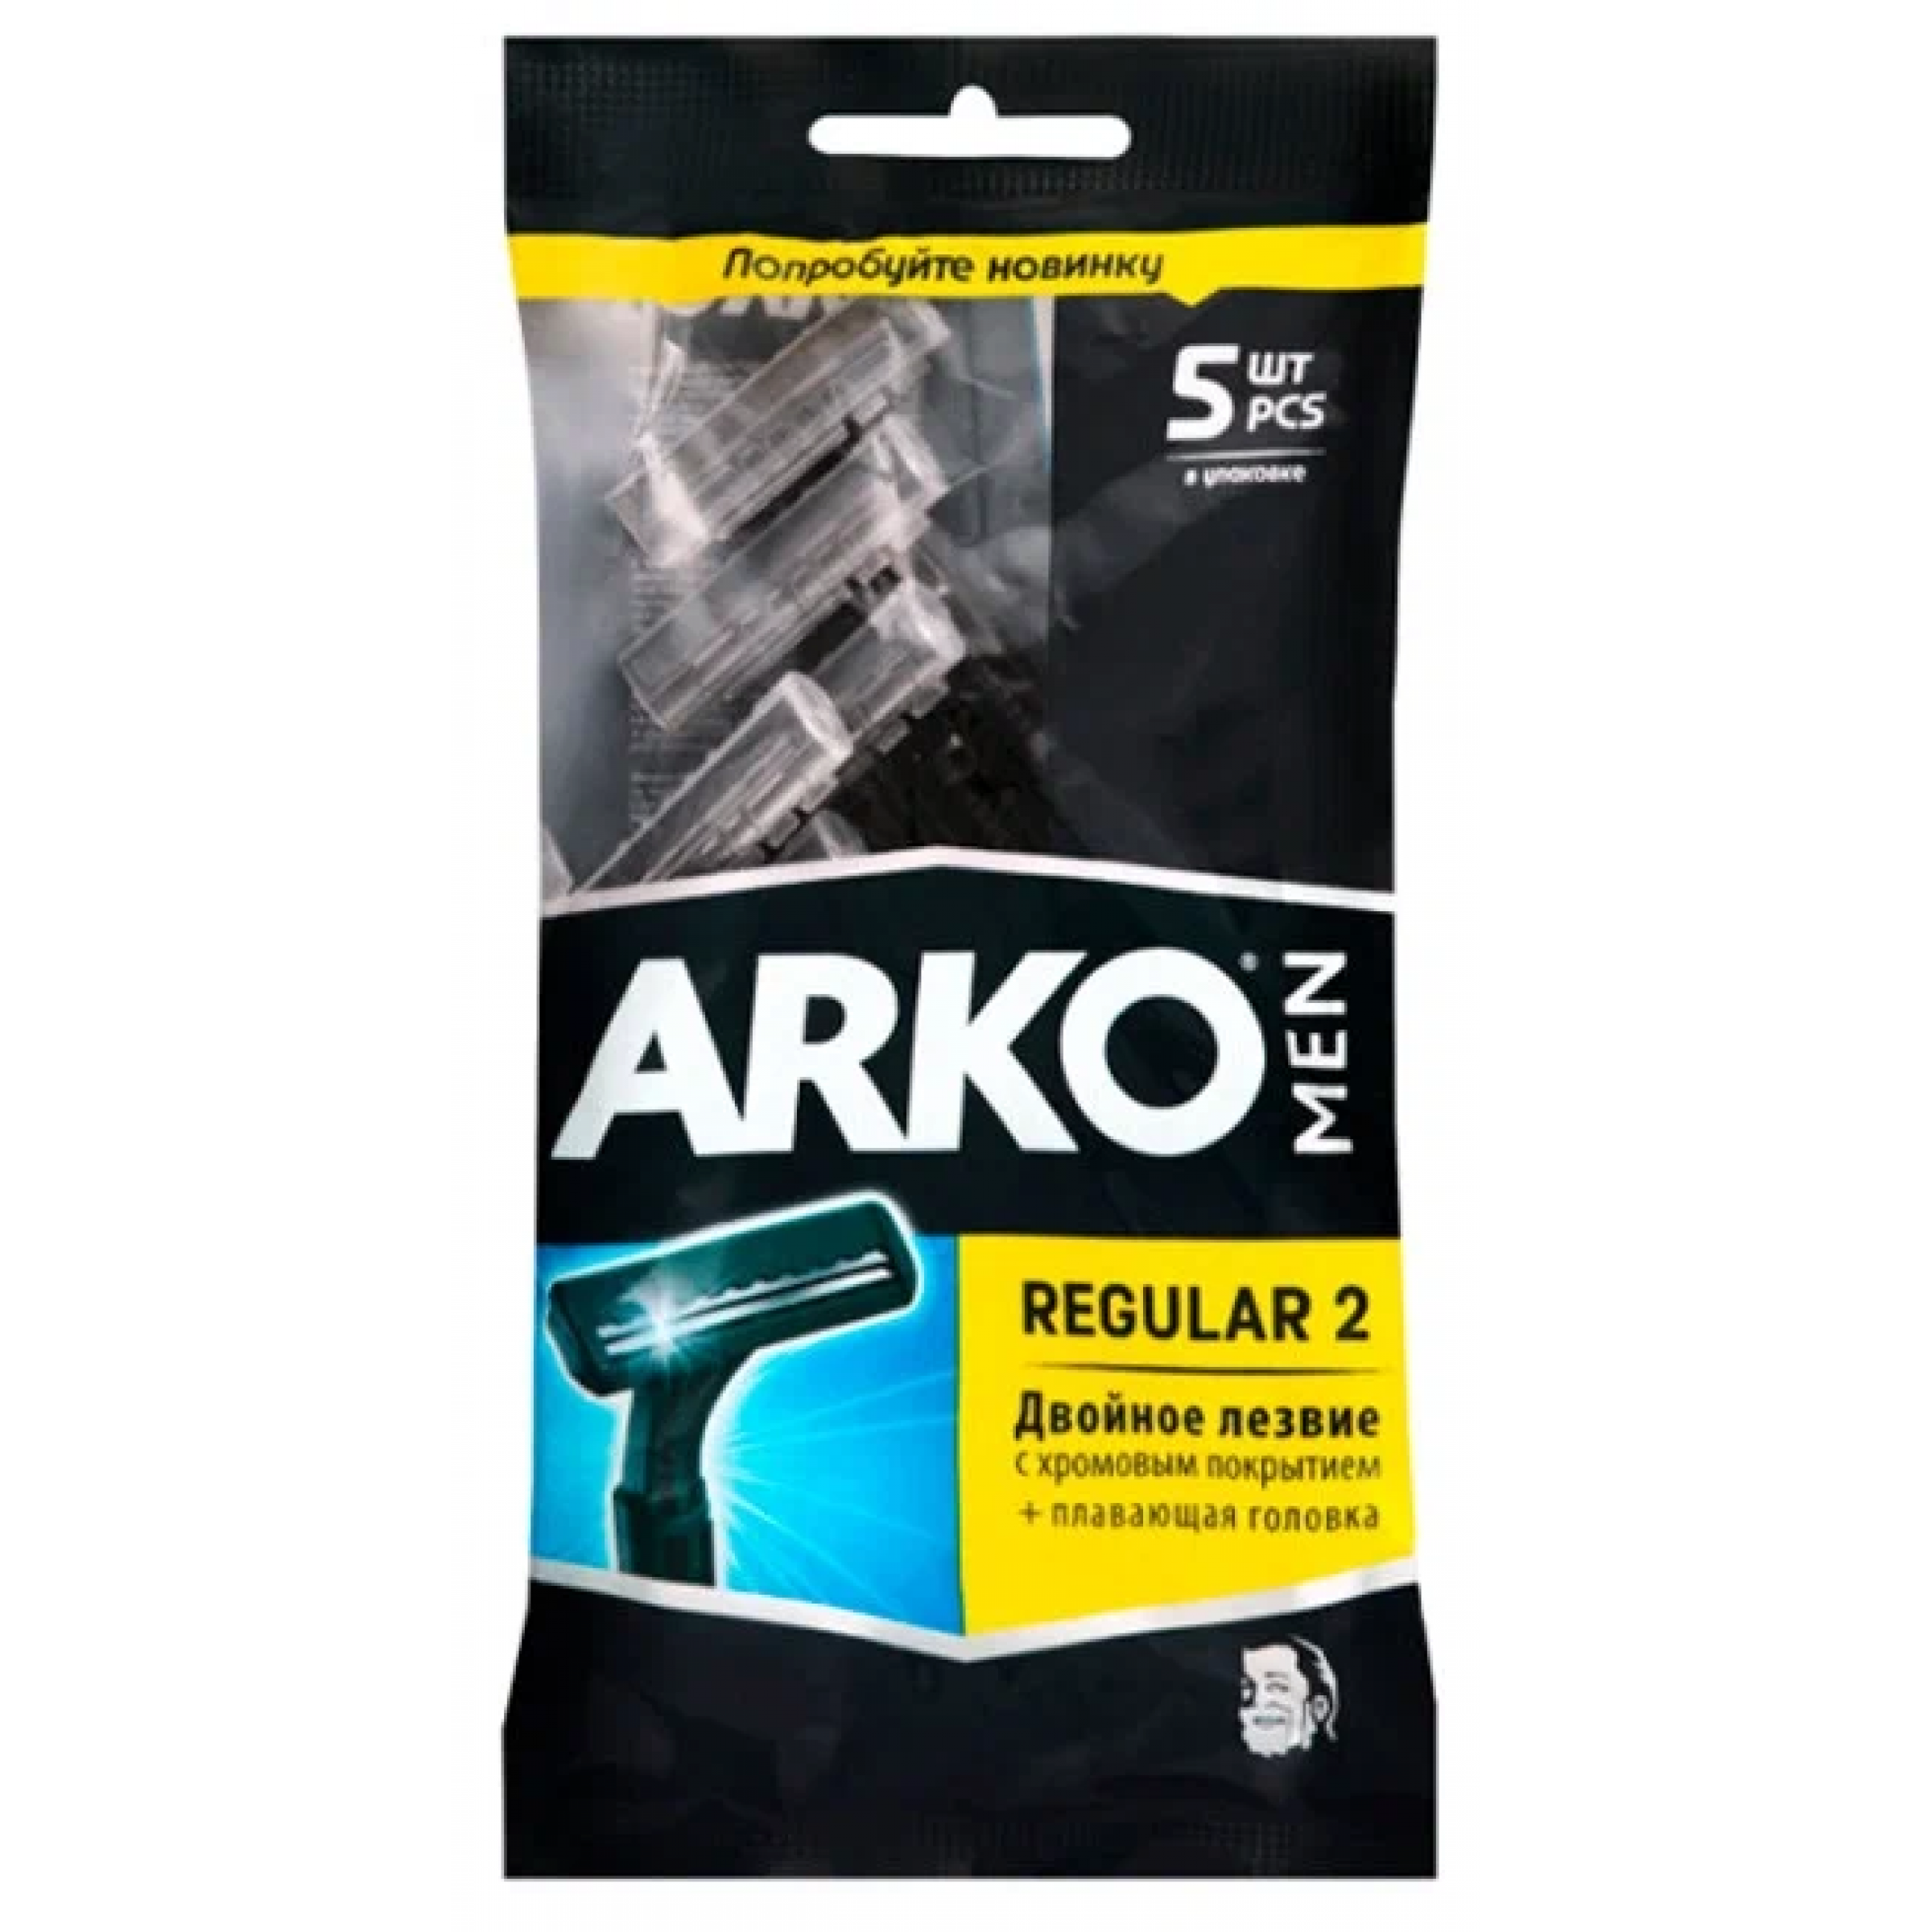 Брит т. Станок для бритья Arko men Regular 2 5 шт. Бритвенный станок Arko Soft Touch w2, 3 шт. Arko станок д/бритья 5 шт t2 2 лез 5 шт {24}. Arko men станок одноразовый regular2 (2лез) 5шт.